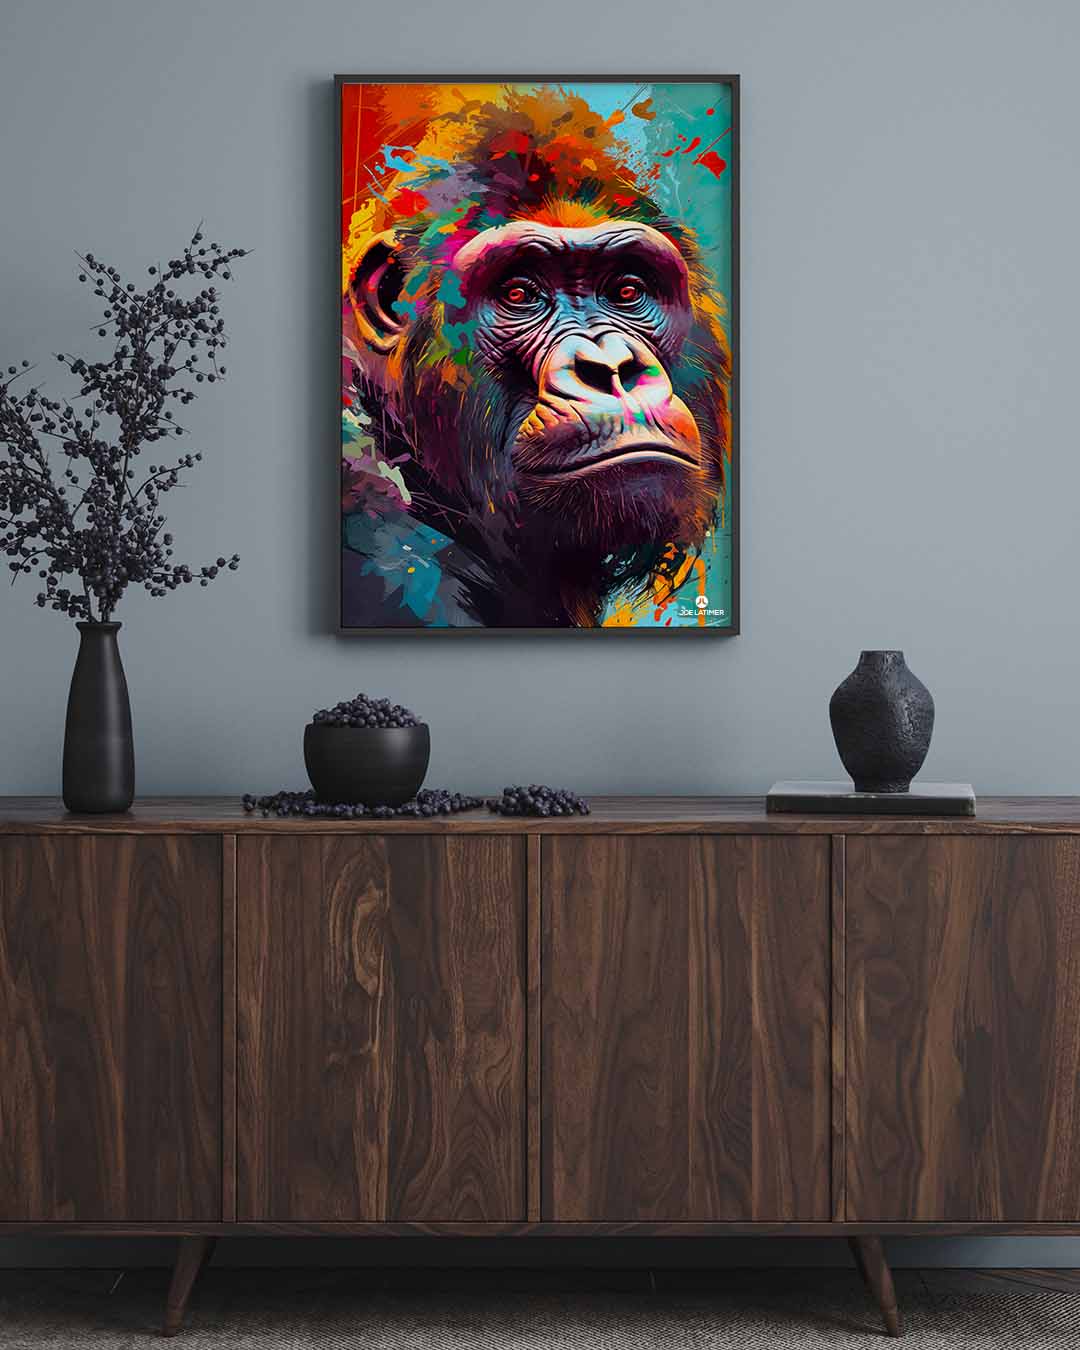 Gorilla Poster A Park, Artist Winter Creative Latimer | Media Digital - Joe FL 